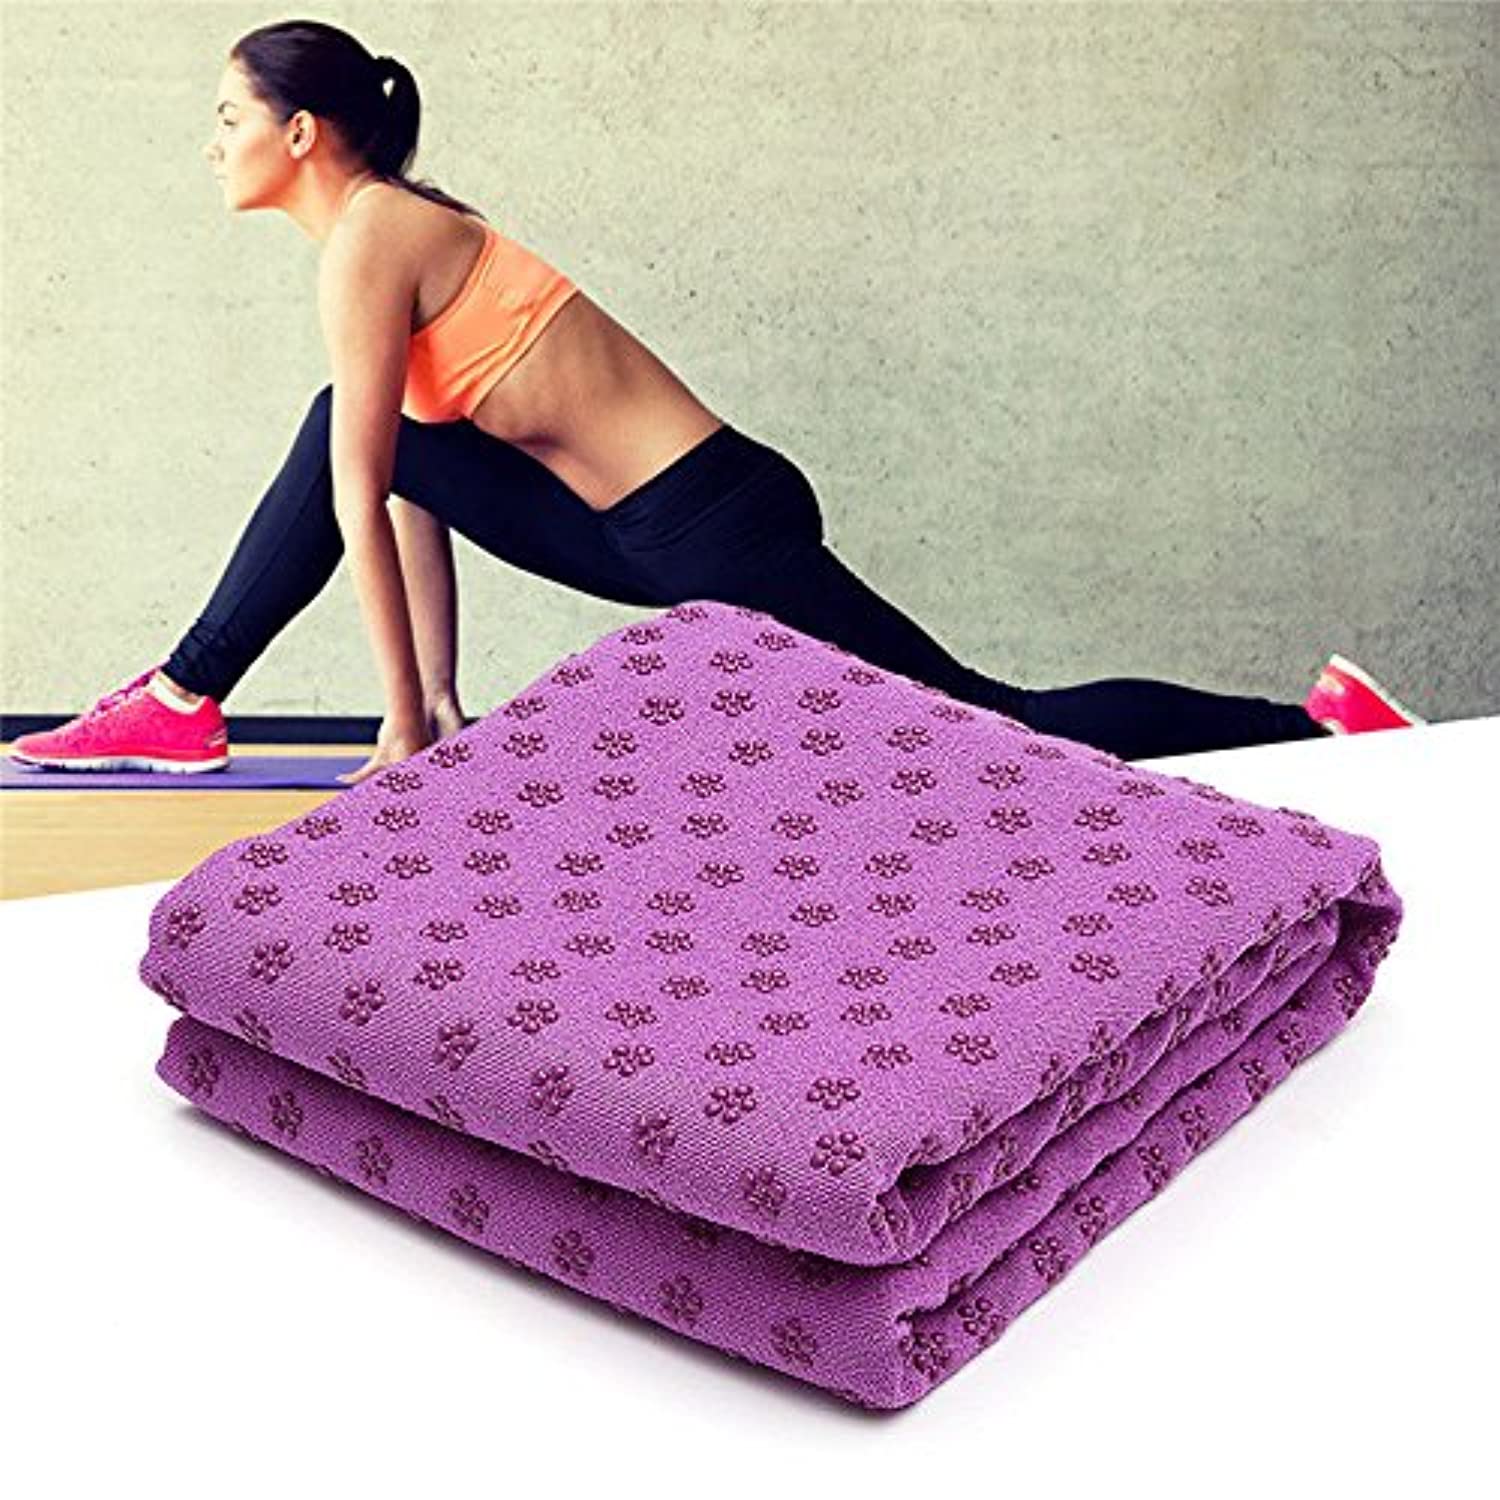 IBL-Toalla de yoga, toalla para esterilla de yoga caliente, absorbe el  sudor, antideslizante, para yoga caliente, pilates y entrenamiento, 24 x 72